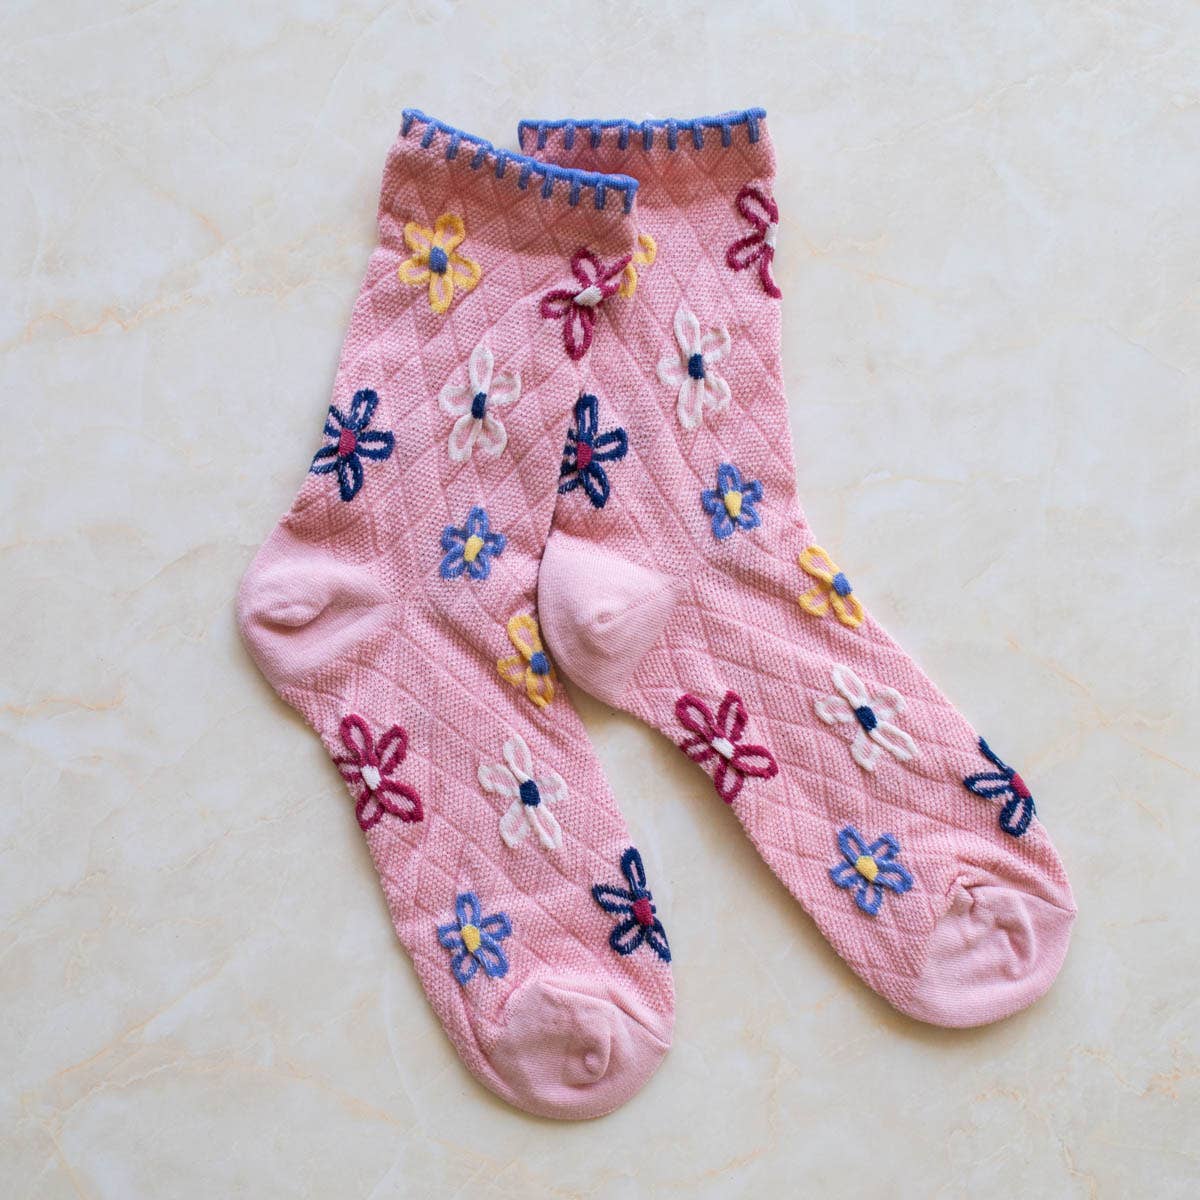 Vintage Floral Socks: Mocha Brown